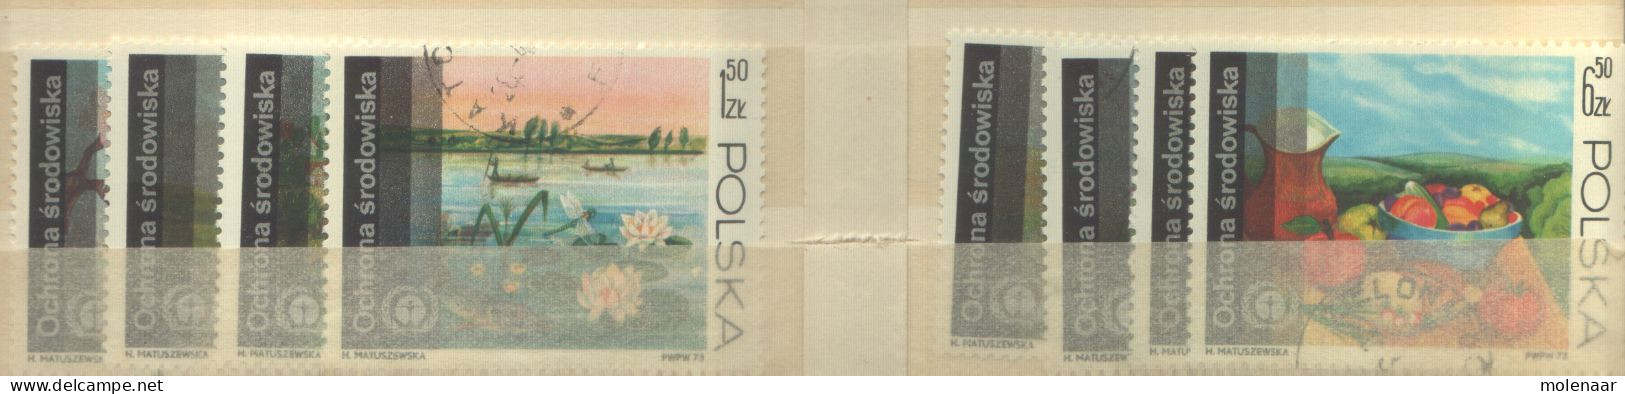 Postzegels > Europa > Polen > 1944-.... Republiek > 1971-80 > Gebruikt No. 2262-2269 (12091) - Usati